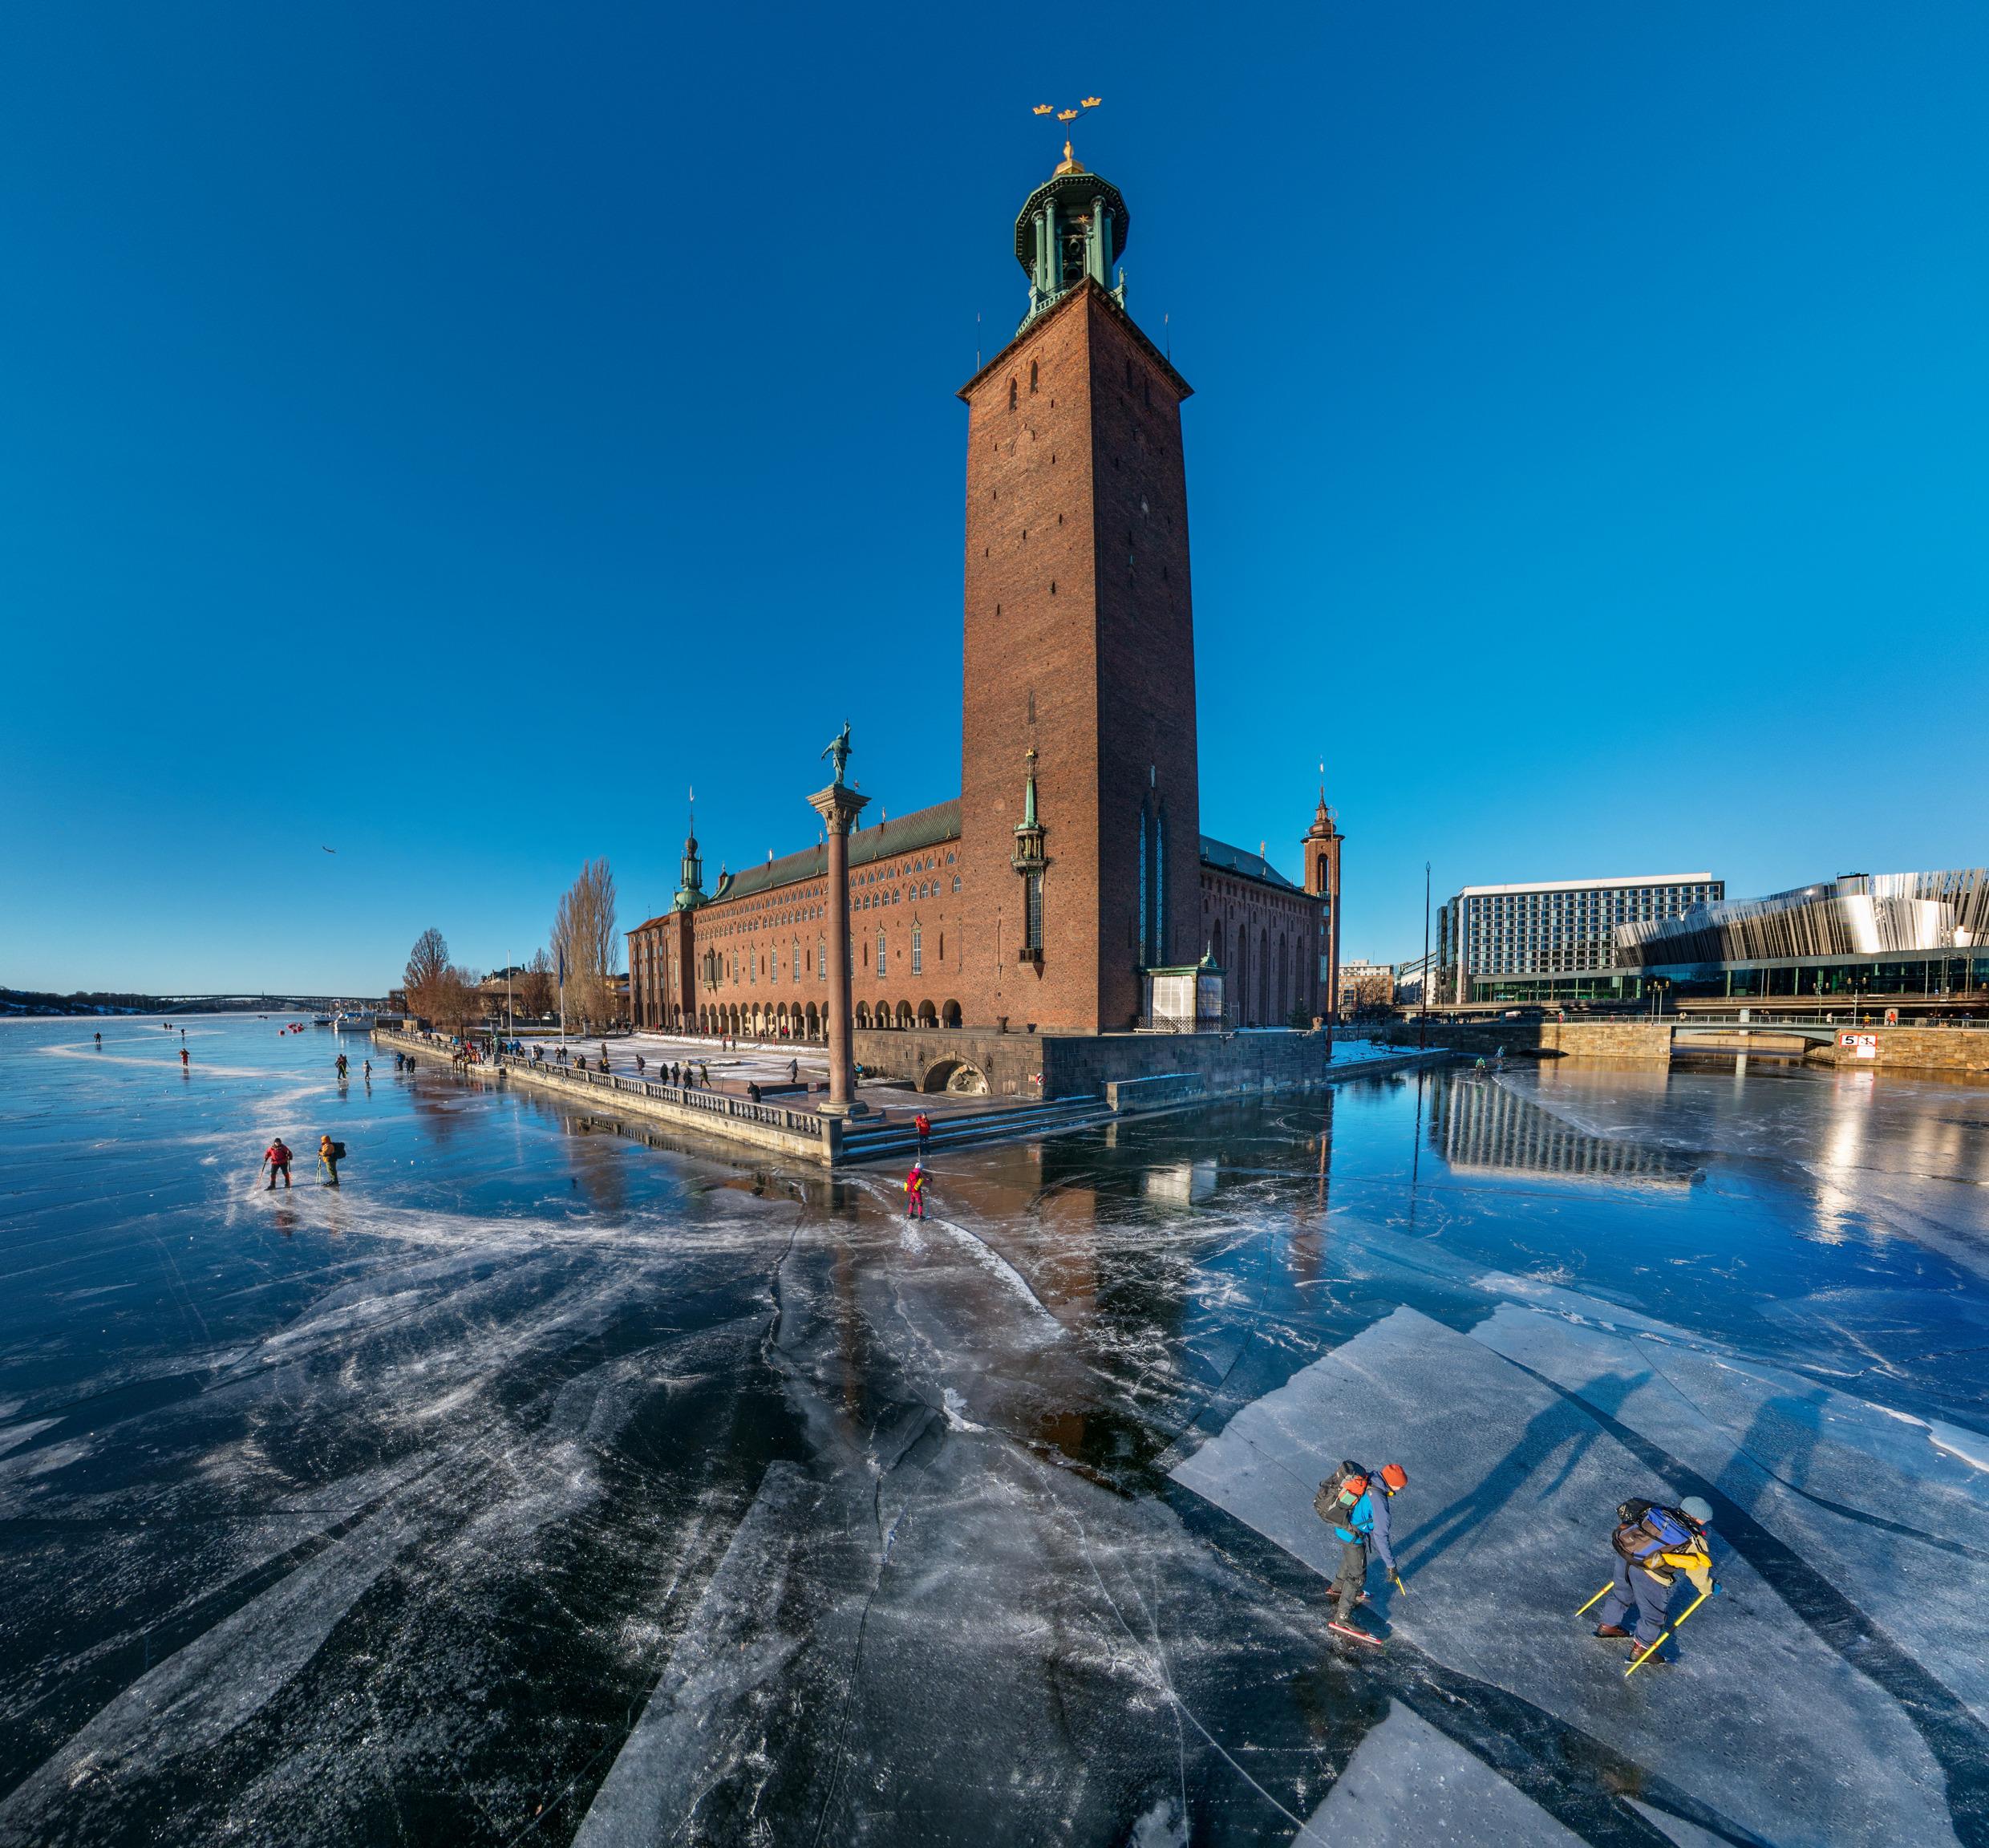 يتزلج السويديون في فصل الشتاء على الجليد حول مبنى بلدية ستوكهولم.